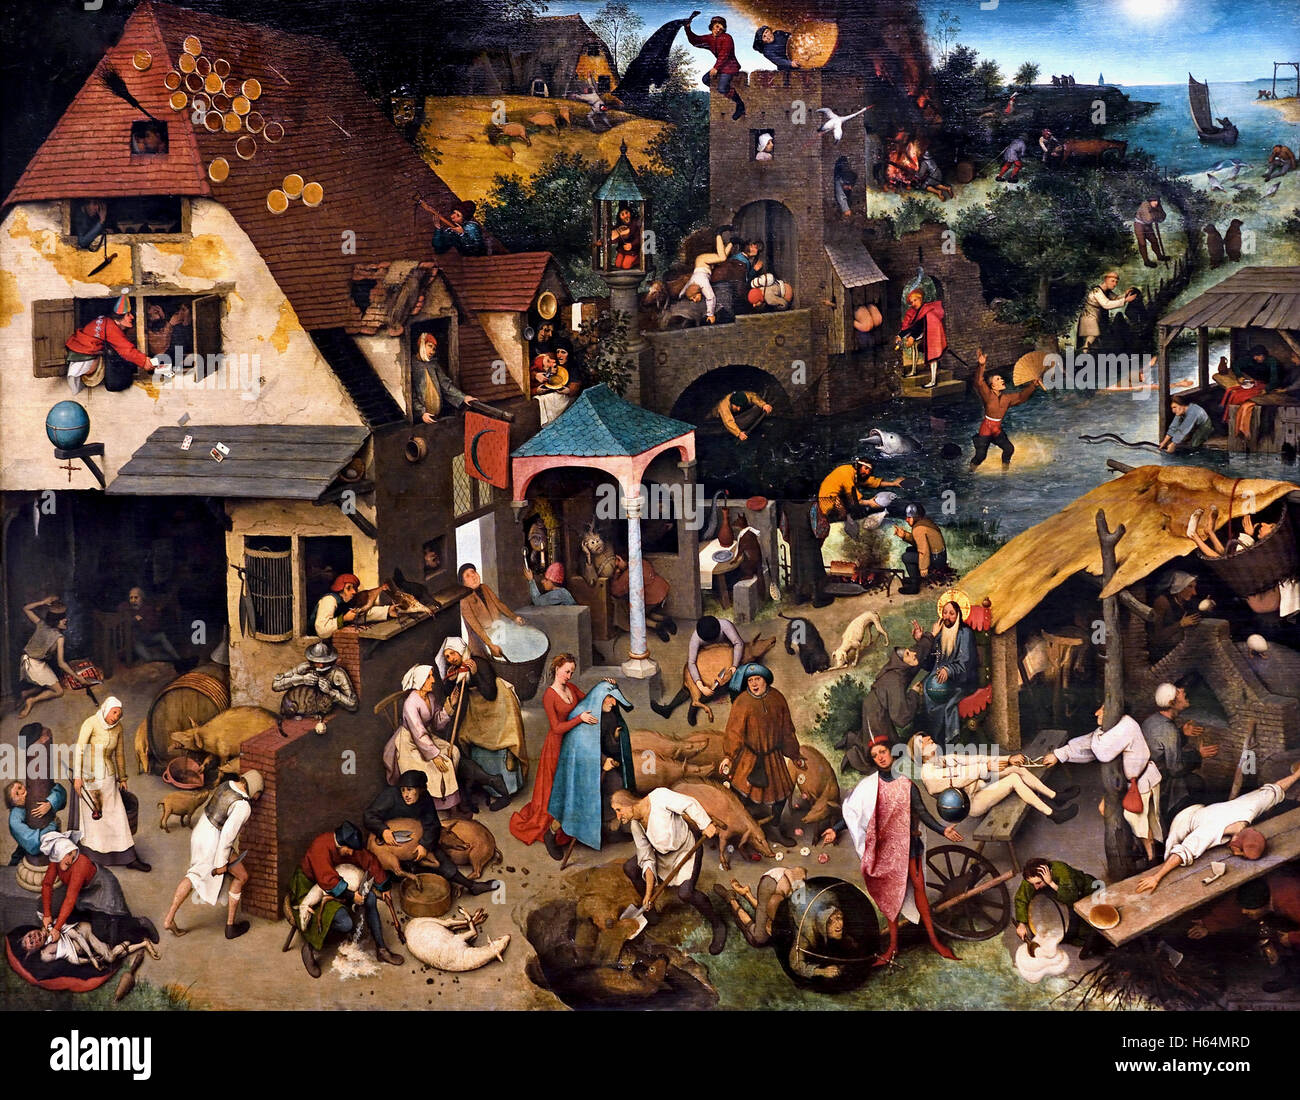 Los holandeses proverbios 1559 Pieter Brueghel ( Bruegel ) el Starez Breda1525 - 1569 Bruselas holandés belga de Flandes Bélgica Países Bajos Medioevo Medieval Foto de stock